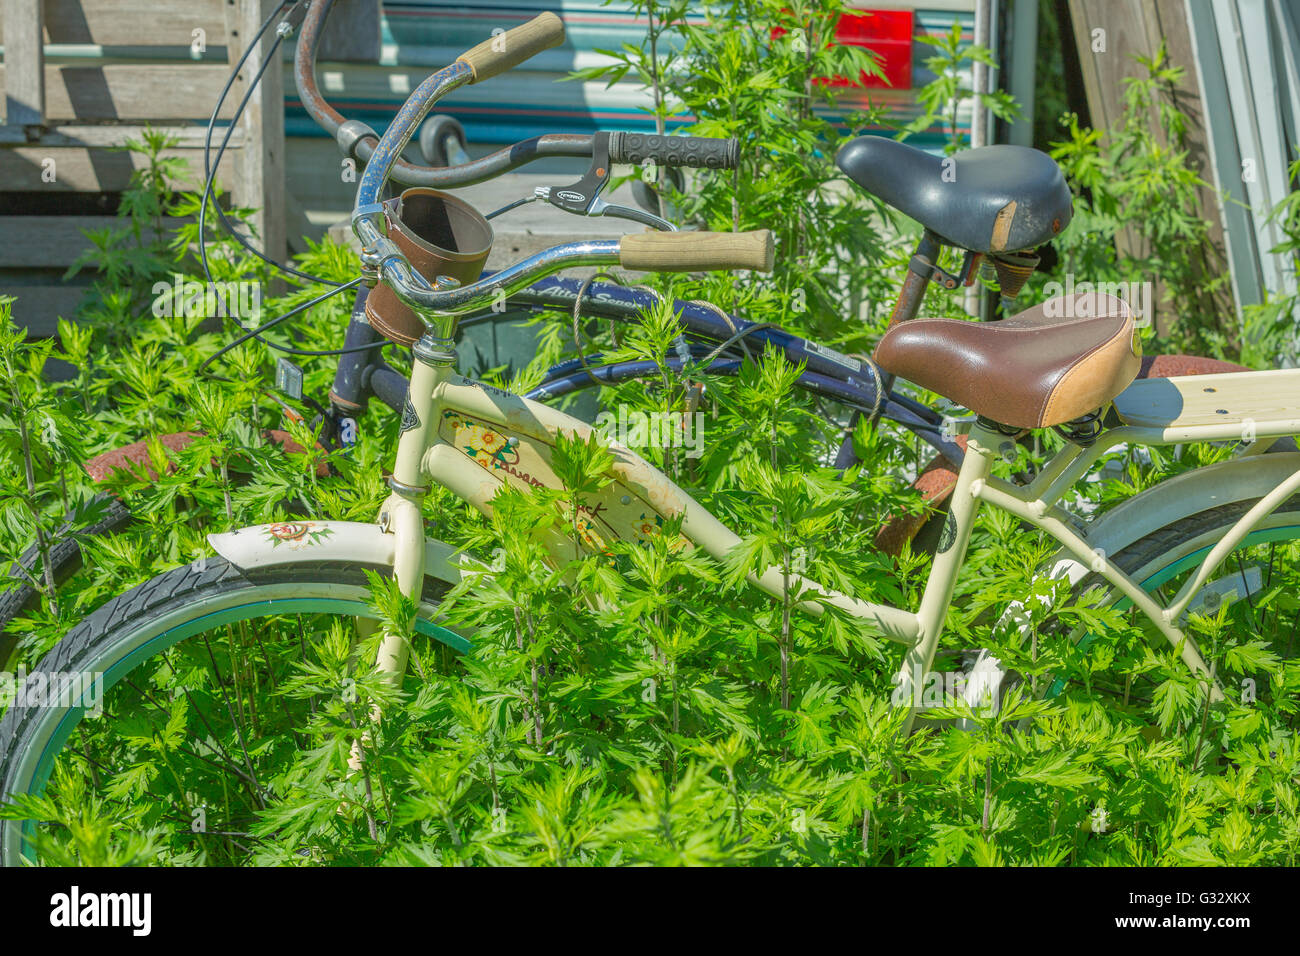 Bicicletas abandonadas bloqueados juntos con una cerradura de cable en alta maleza Foto de stock